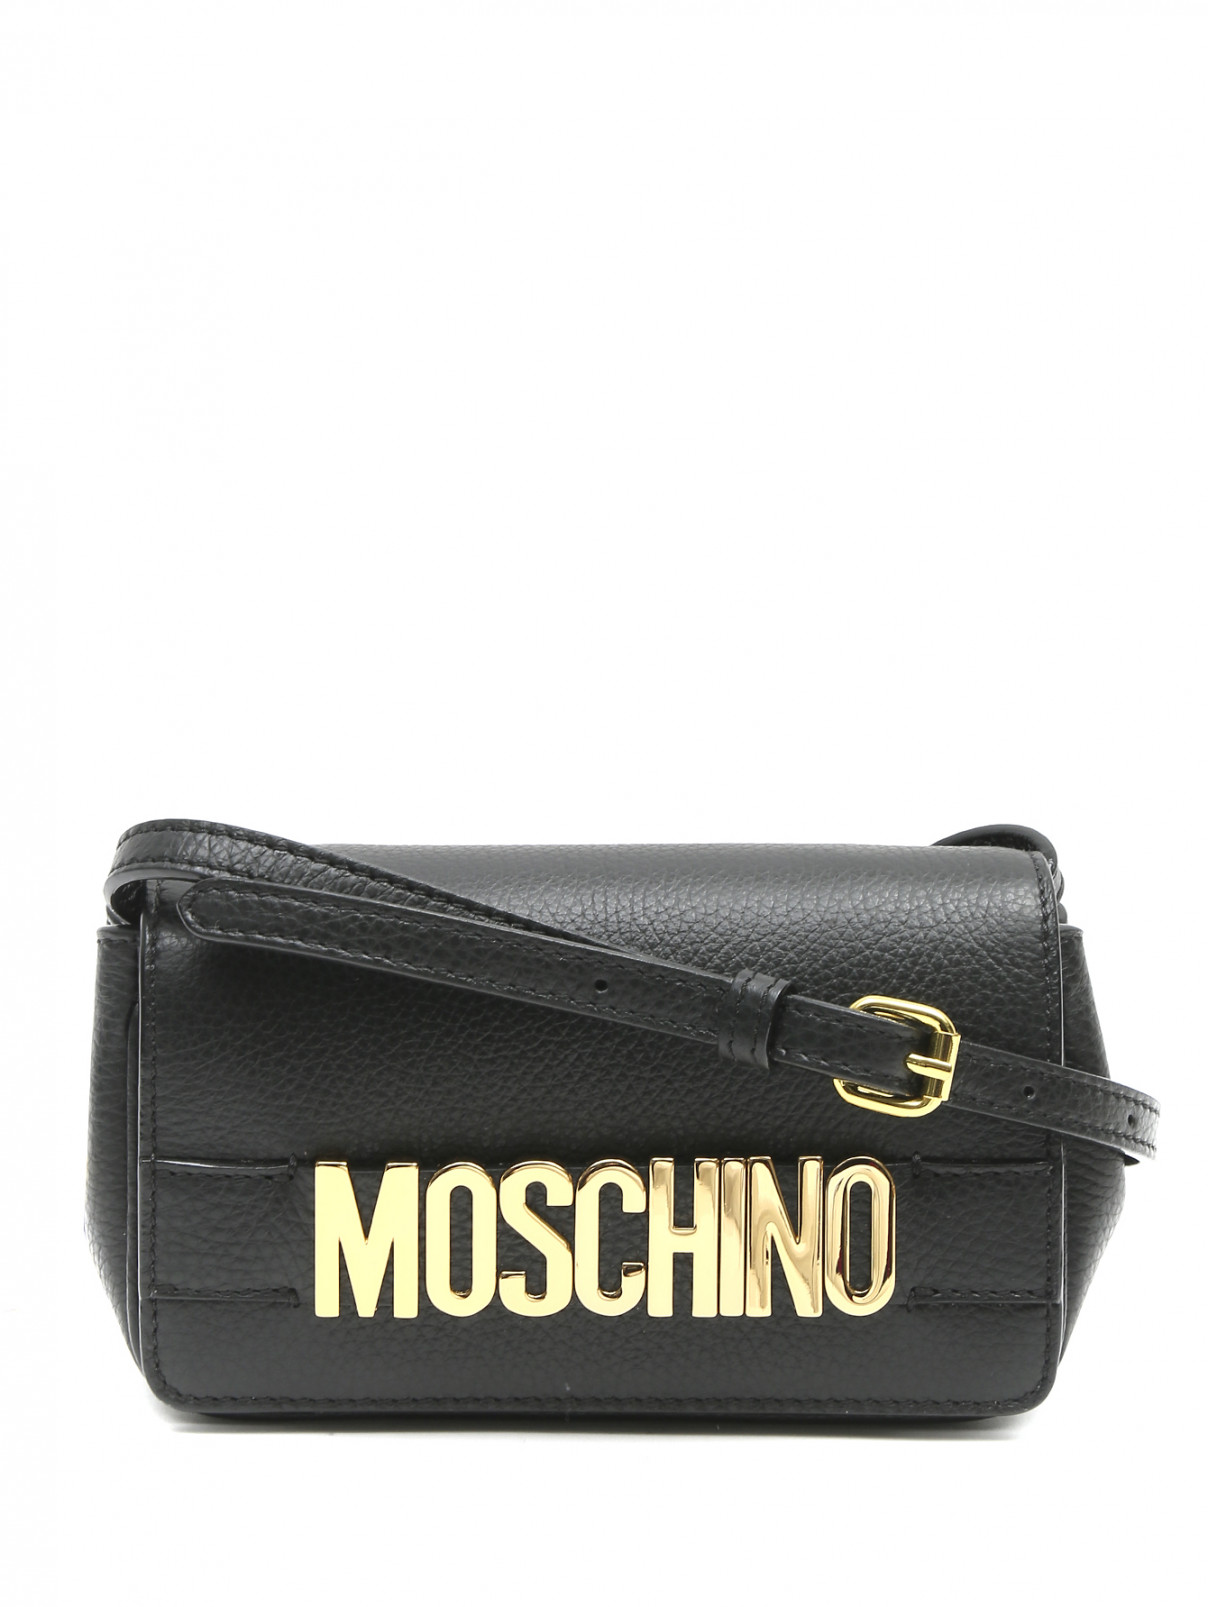 Сумка из кожи на плечевом ремне Moschino Couture  –  Общий вид  – Цвет:  Черный